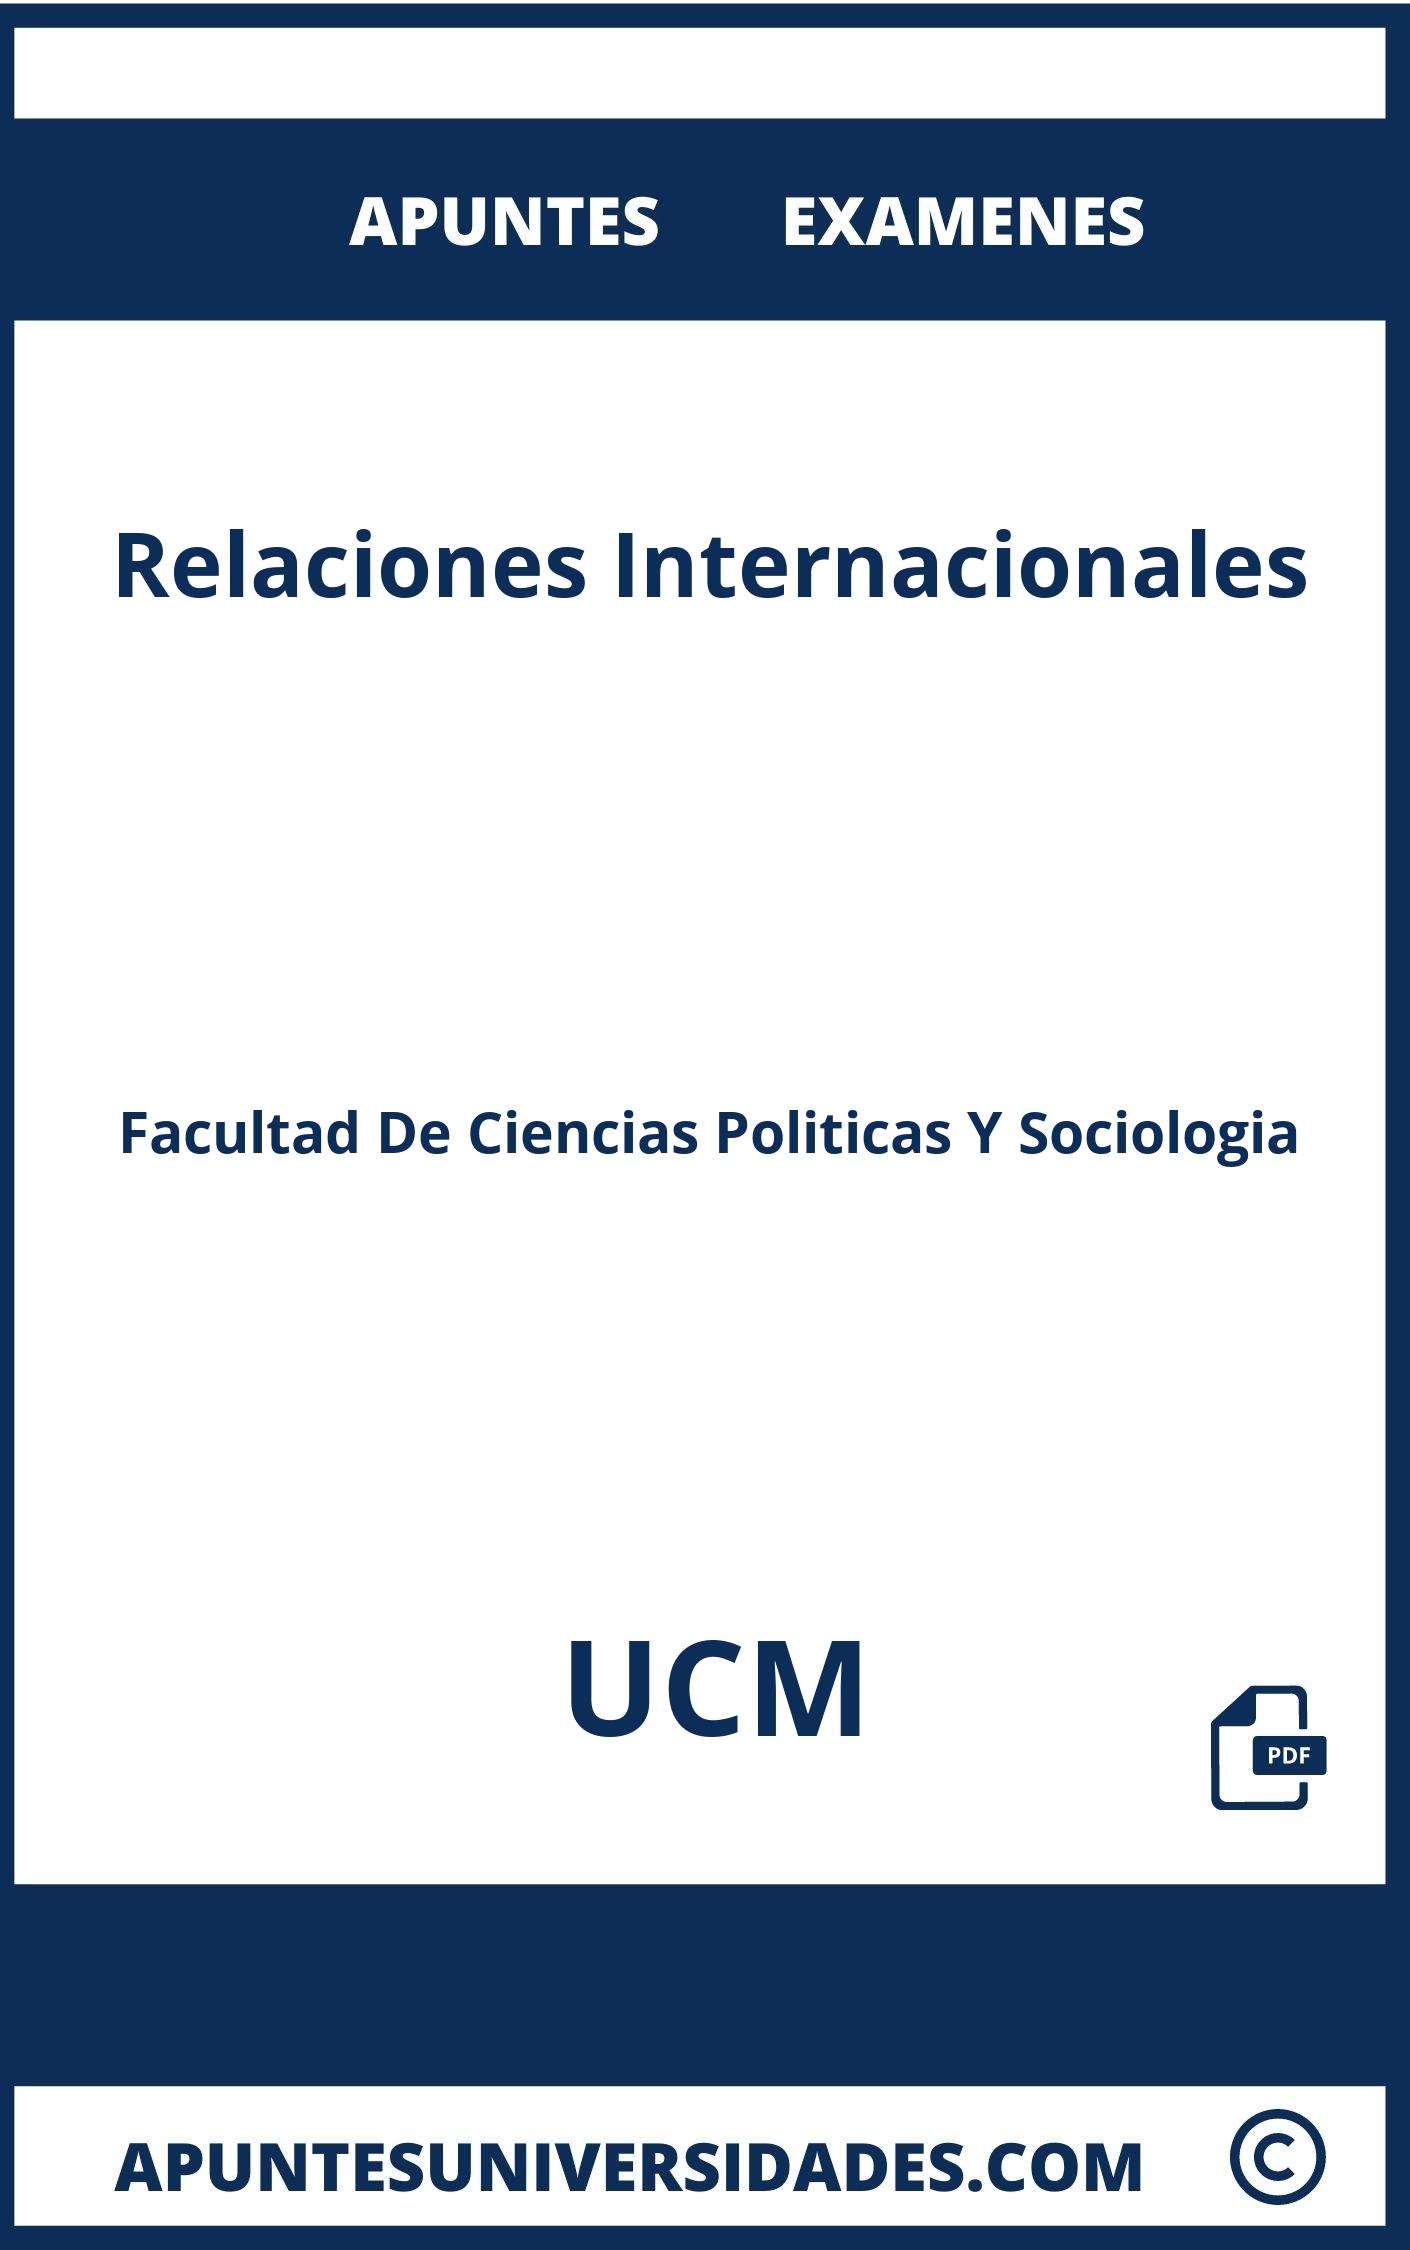 Apuntes Examenes Relaciones Internacionales UCM